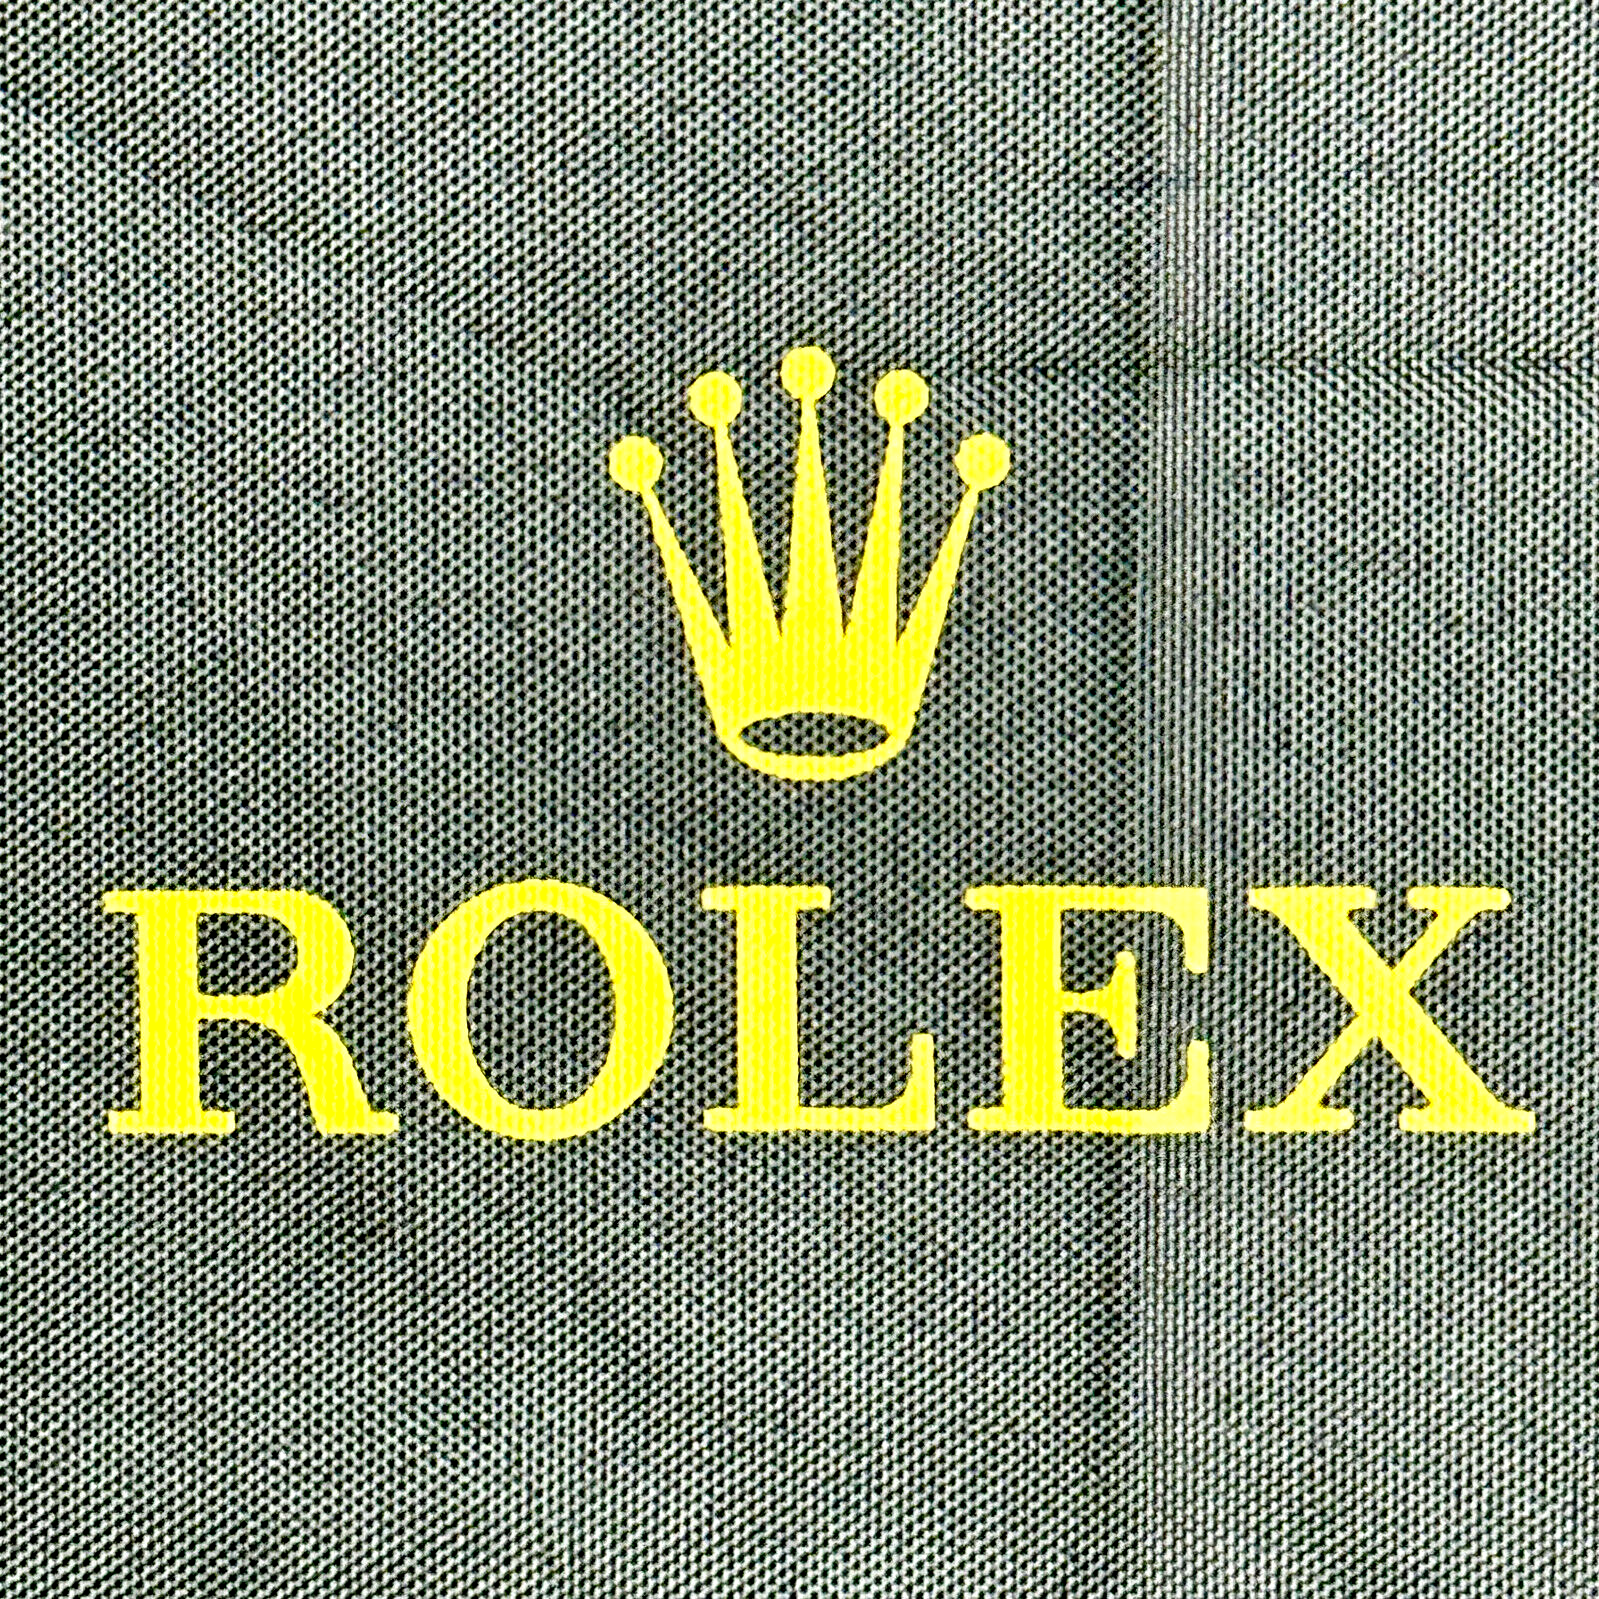 Rolex Knirps Umbrella Green